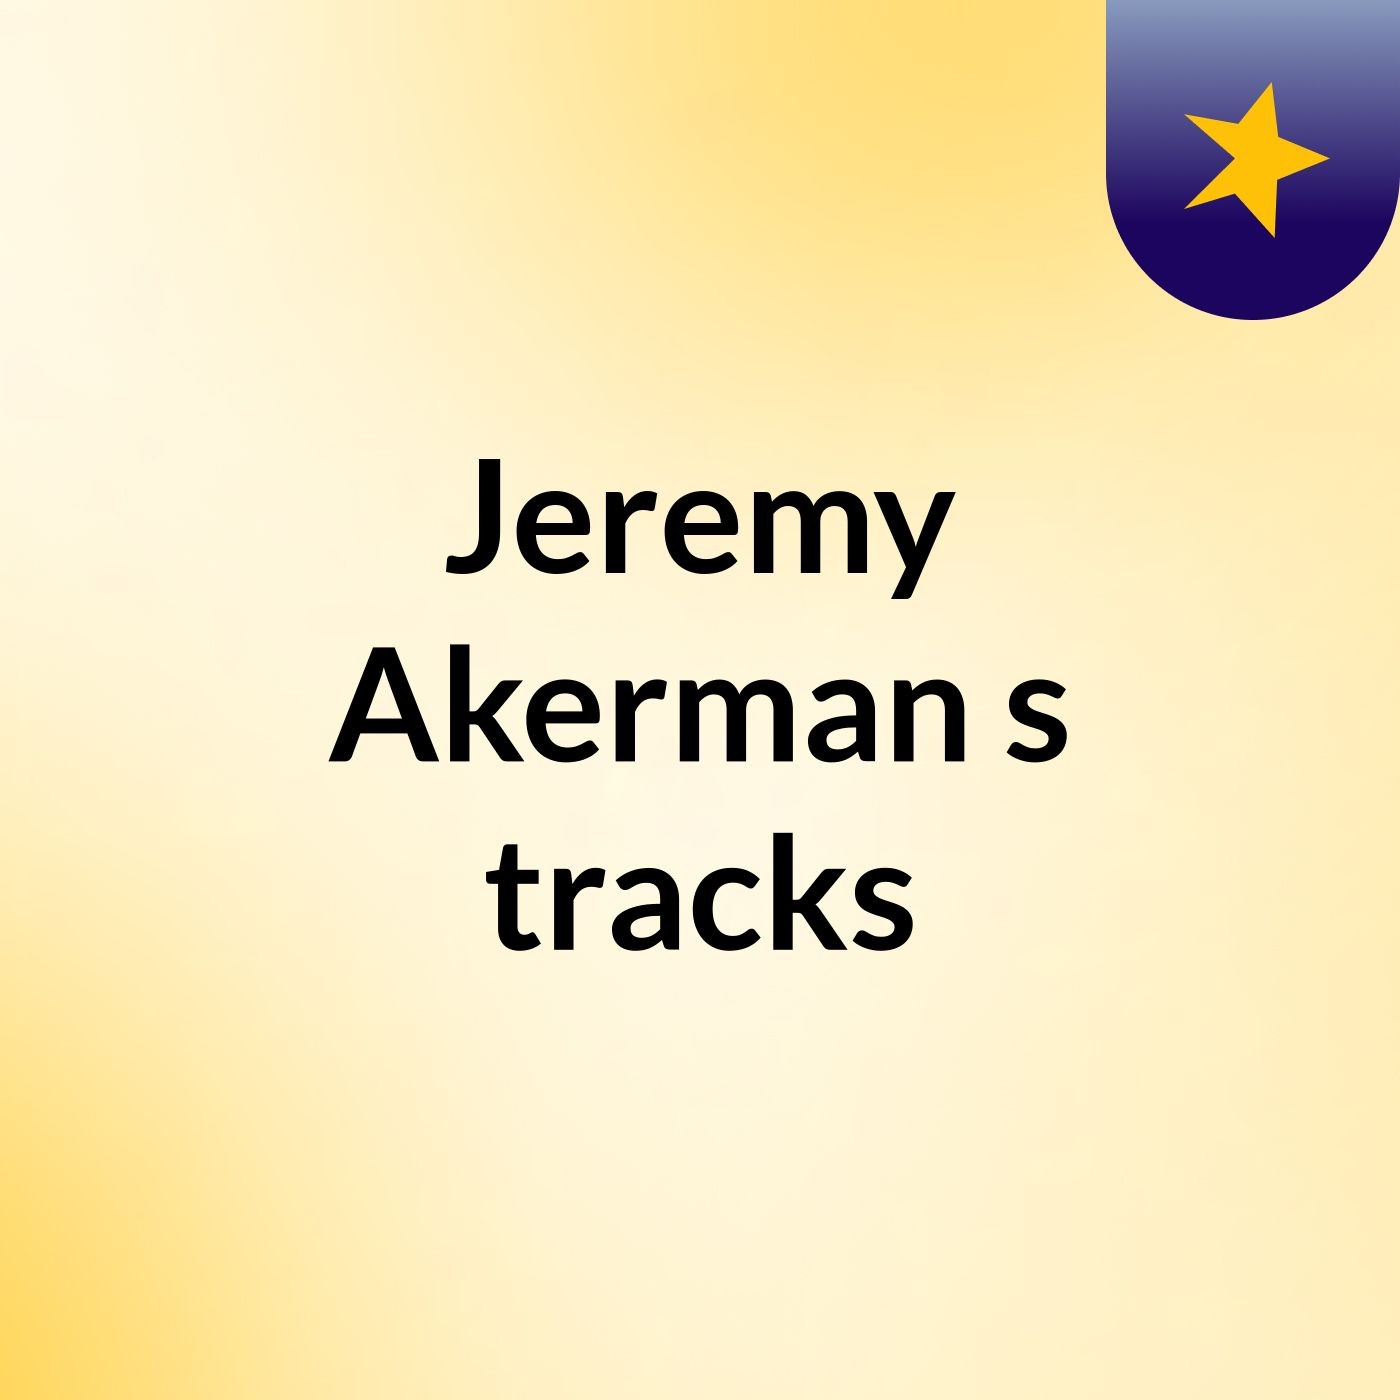 Jeremy Akerman's tracks